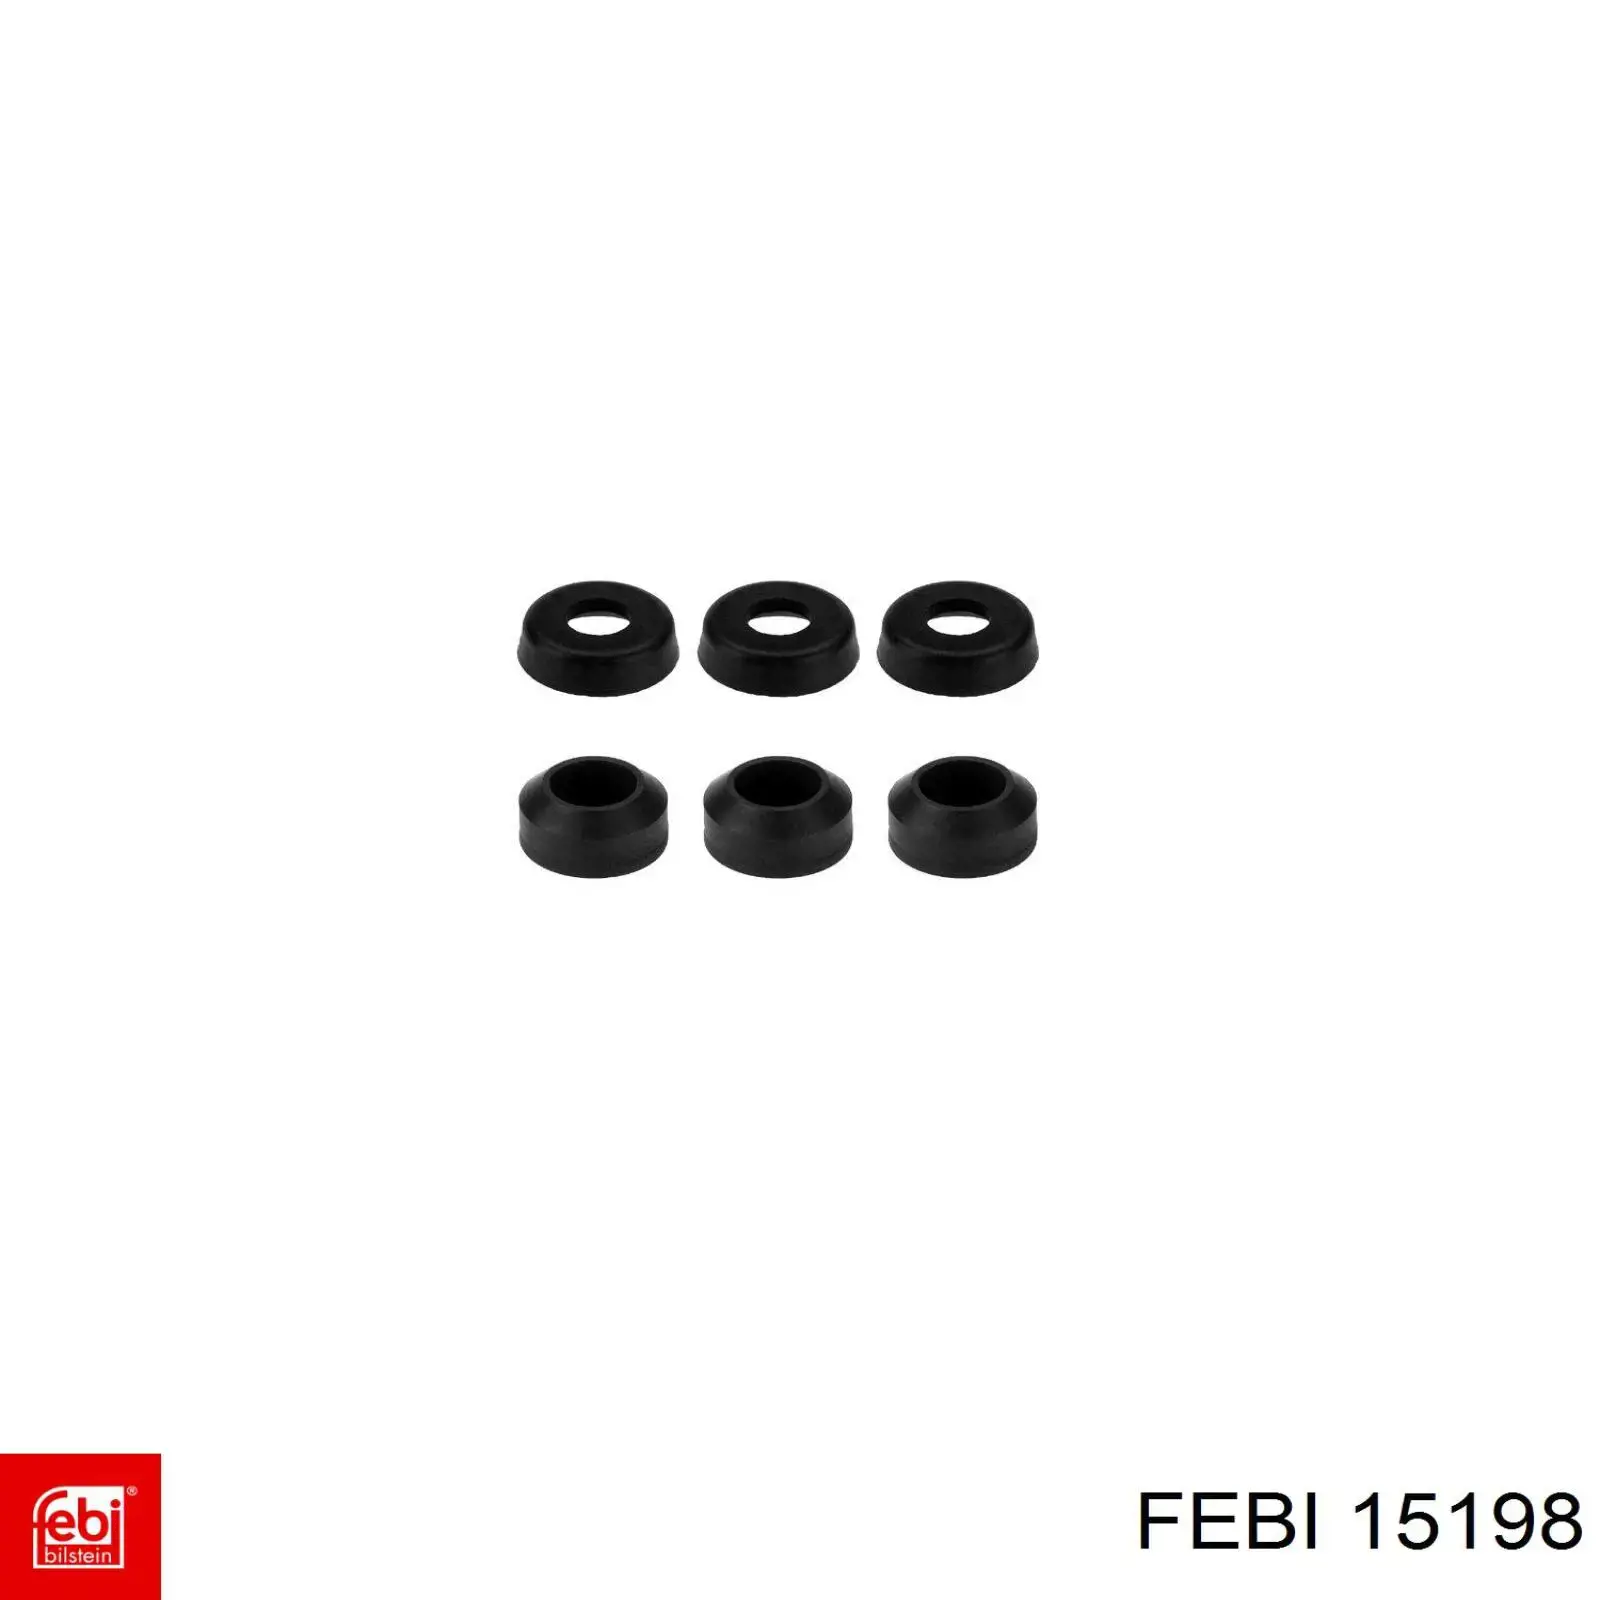 15198 Febi juego de juntas, tapa de culata de cilindro, anillo de junta